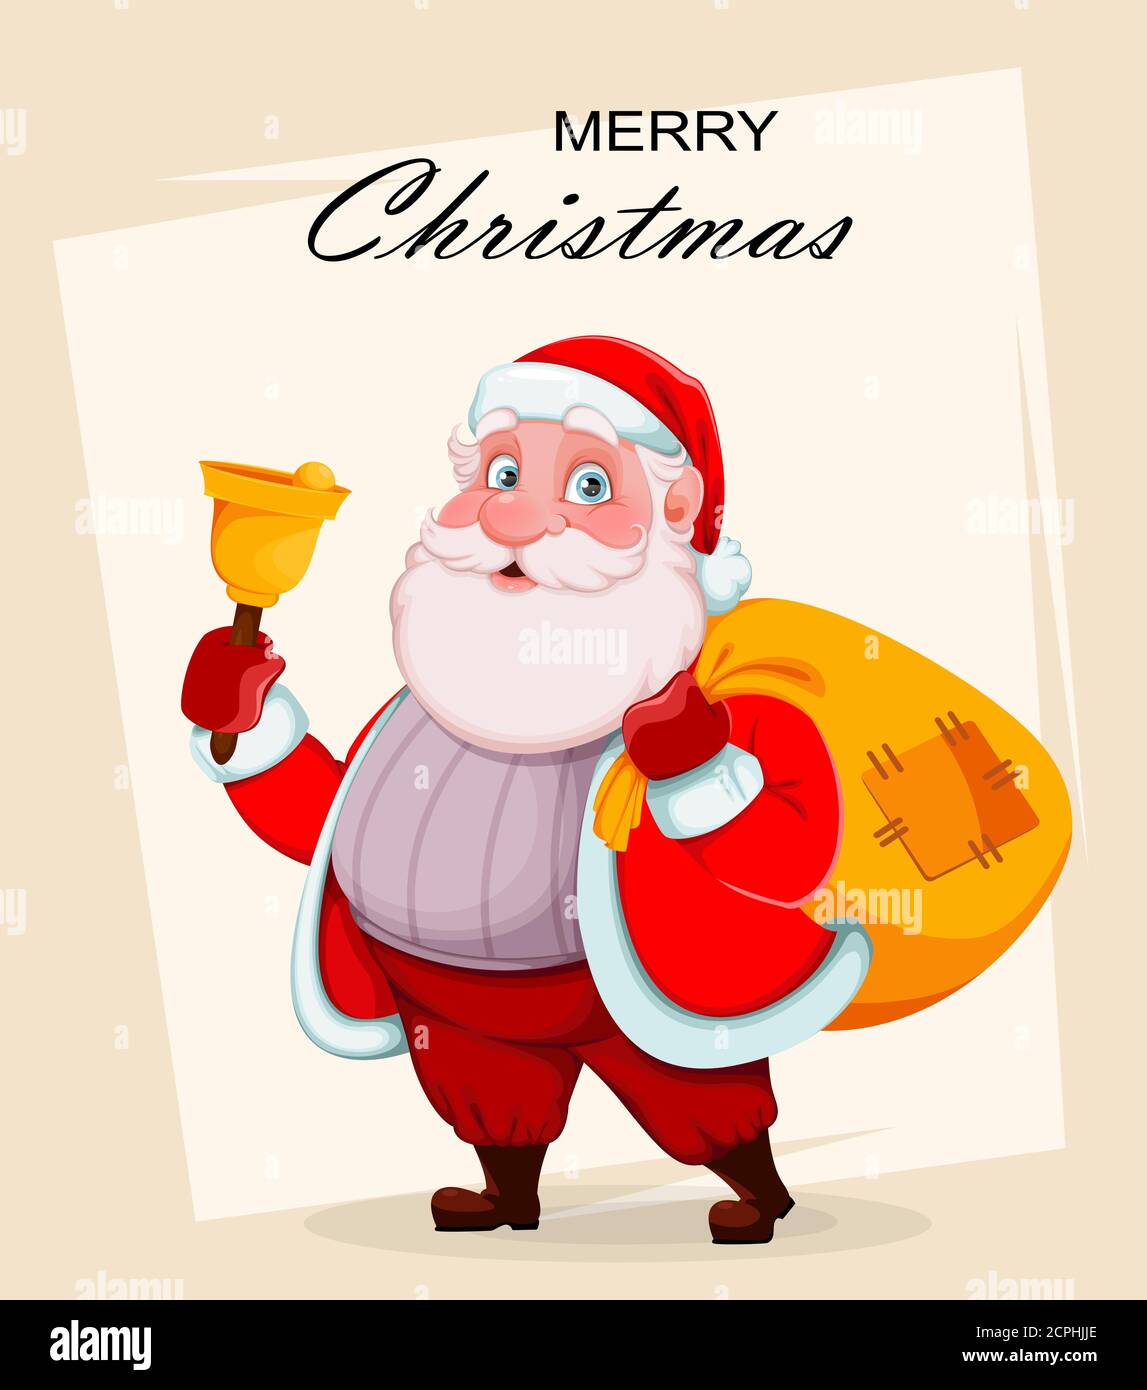 Frohe Weihnachten und ein glückliches neues Jahr Grußkarte. Fröhlicher Weihnachtsmann hält Hand Glocke und Sack mit Geschenken. Vektorgrafik Stock Vektor